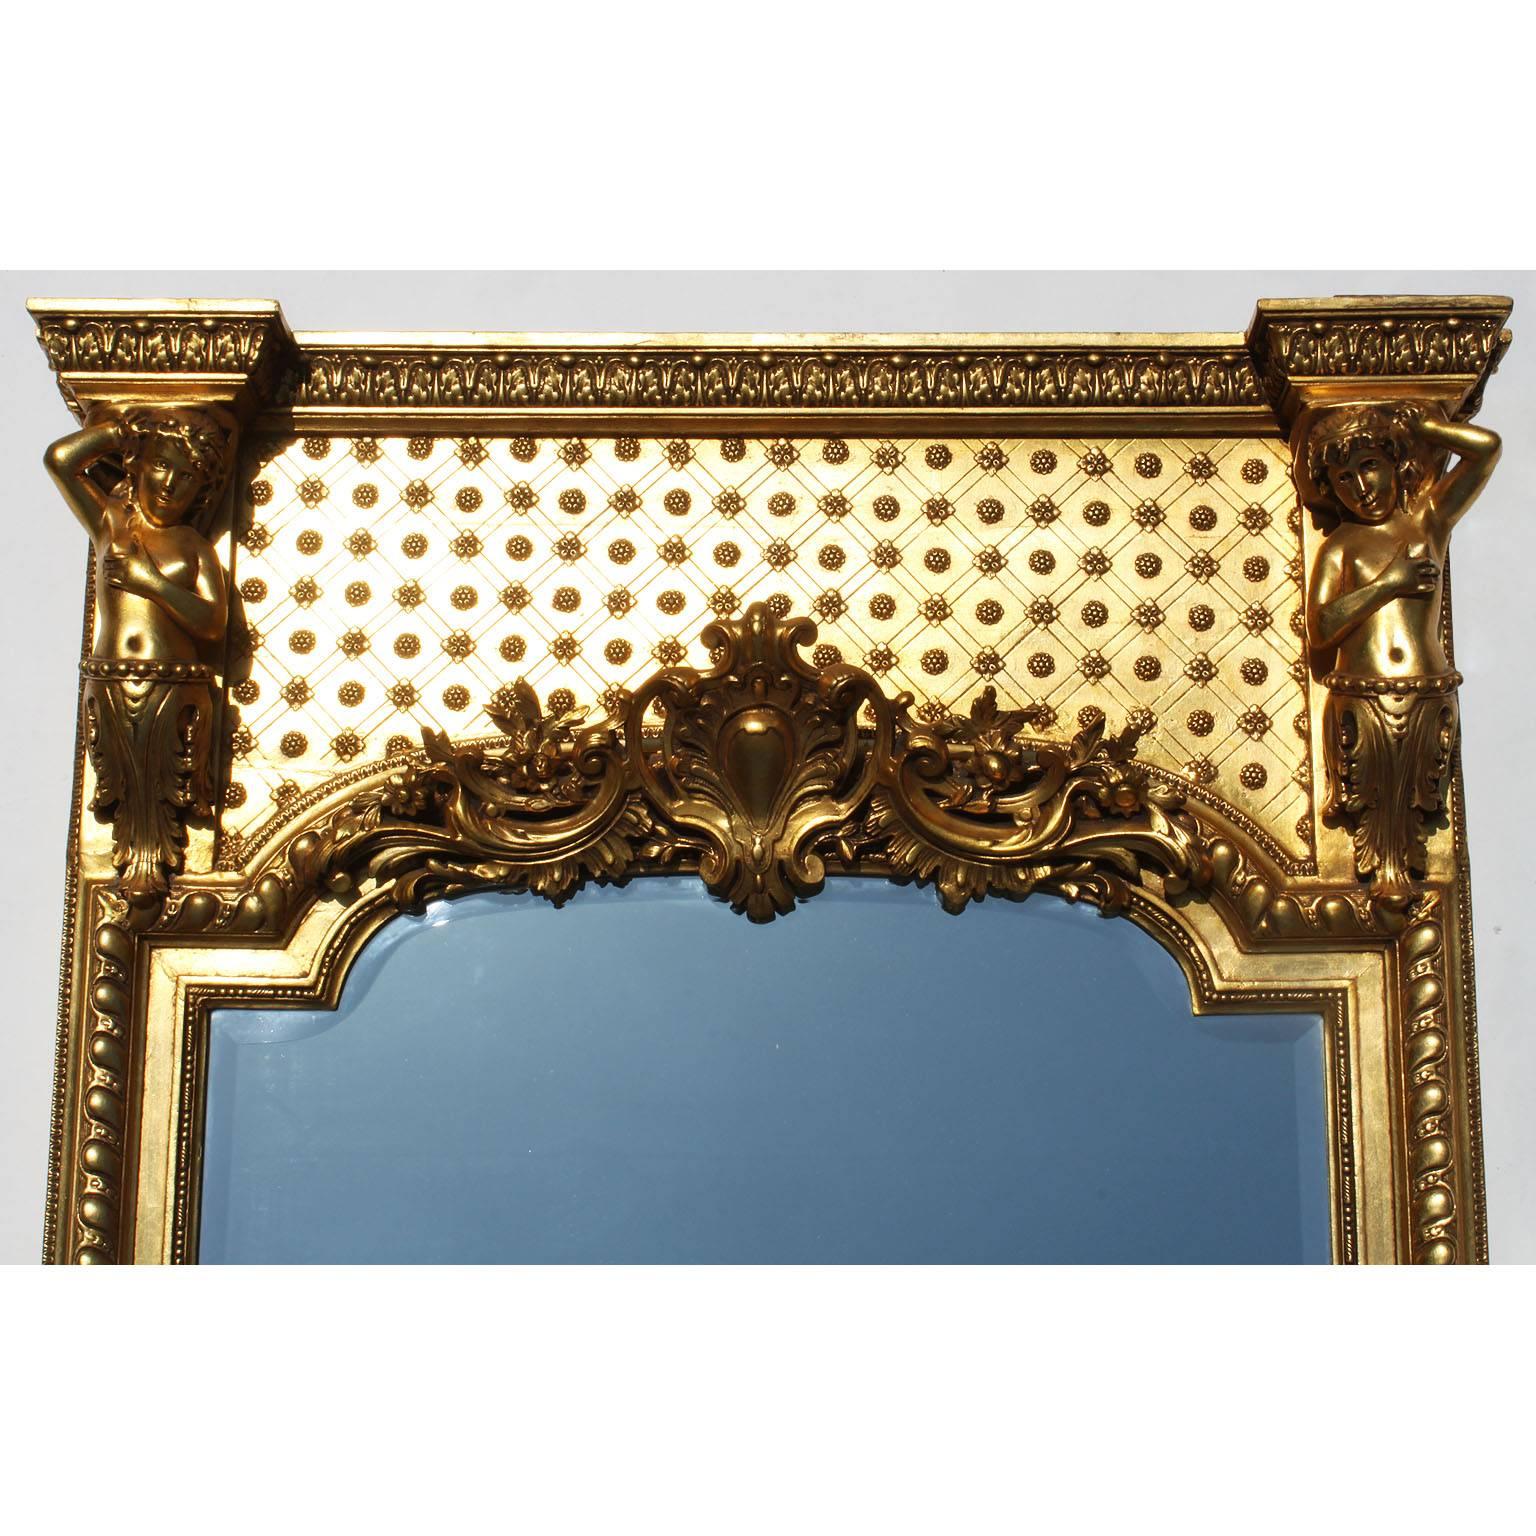 Miroir à trumeau en bois doré et sculpté à la gesso de la Belle Époque. Le cadre allongé est surmonté de chaque côté d'un Putto allégorique et centré d'un bouclier floral avec des branches d'acanthe enroulées, la plaque de miroir est biseautée,